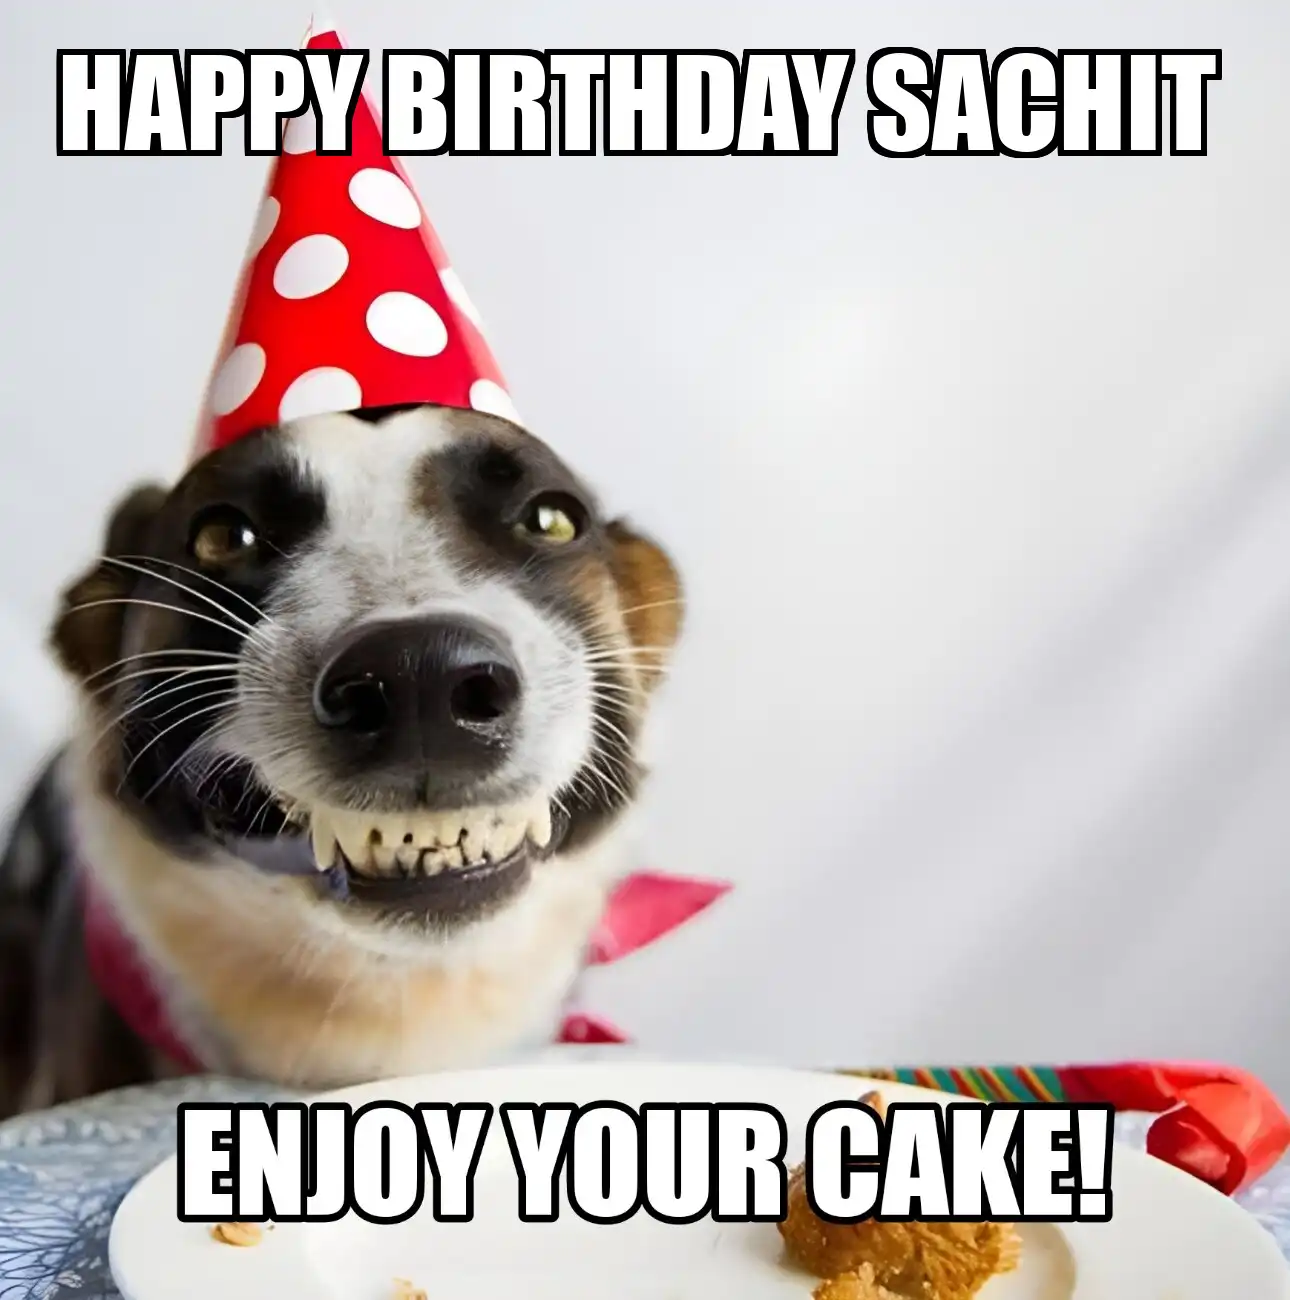 Happy Birthday Sachit Enjoy Your Cake Dog Meme